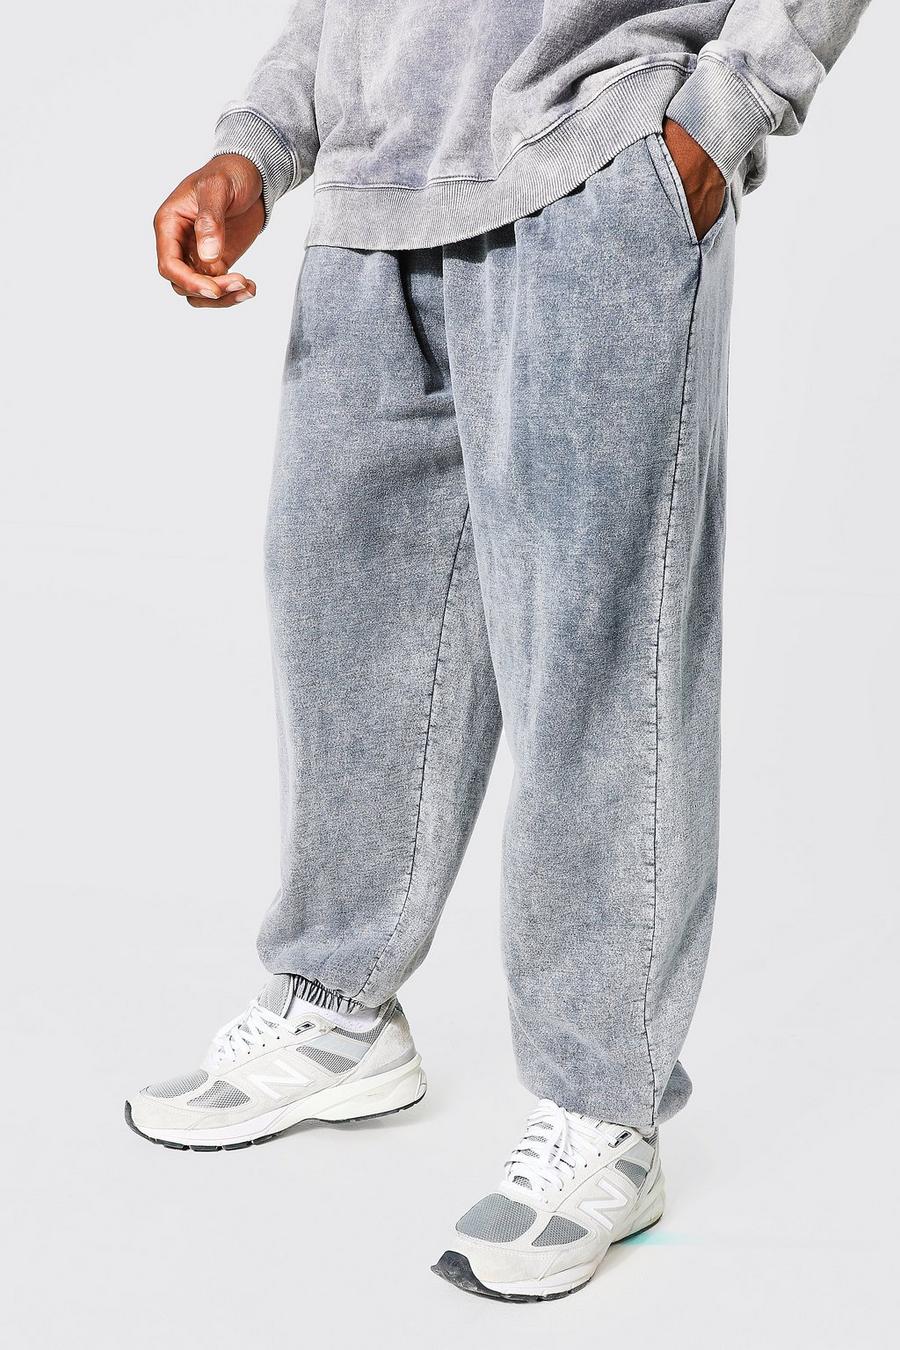 Pantalón deportivo oversize con lavado a la piedra, Charcoal gris image number 1